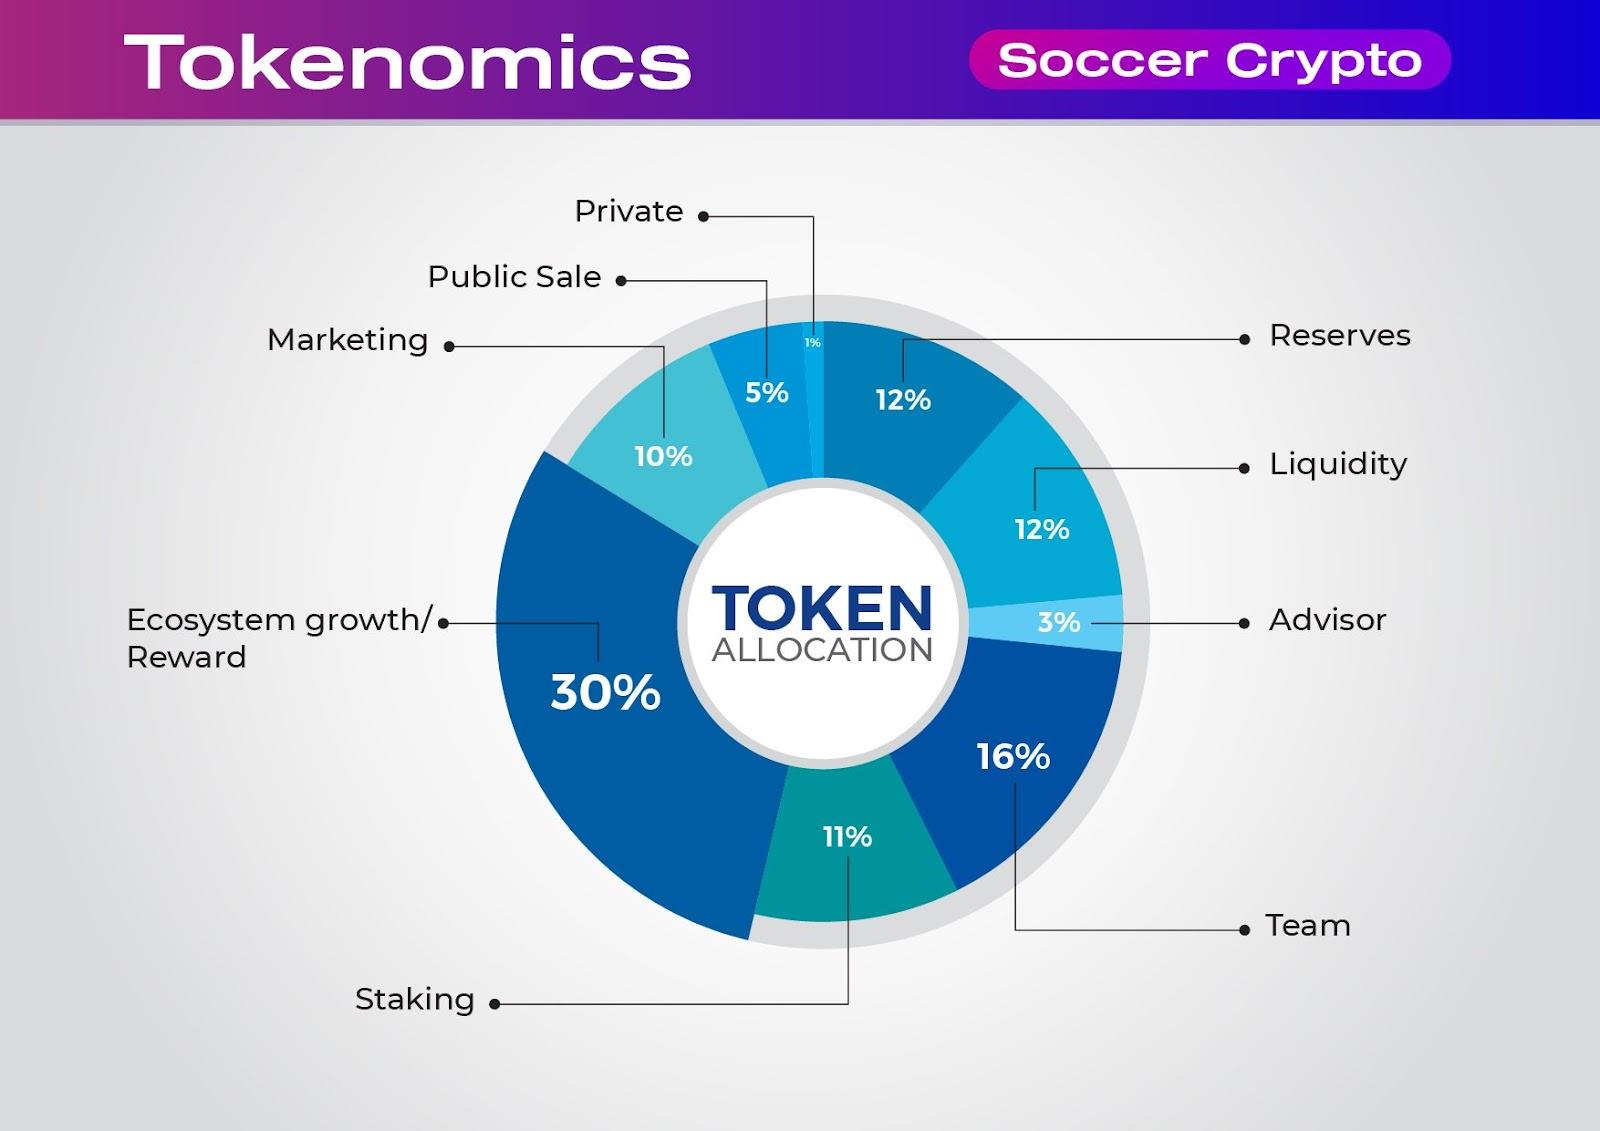 Soccer Crypto — потенциальный проект для фанатов футбола и блокчейна (Audit & KYC by SolidProof)